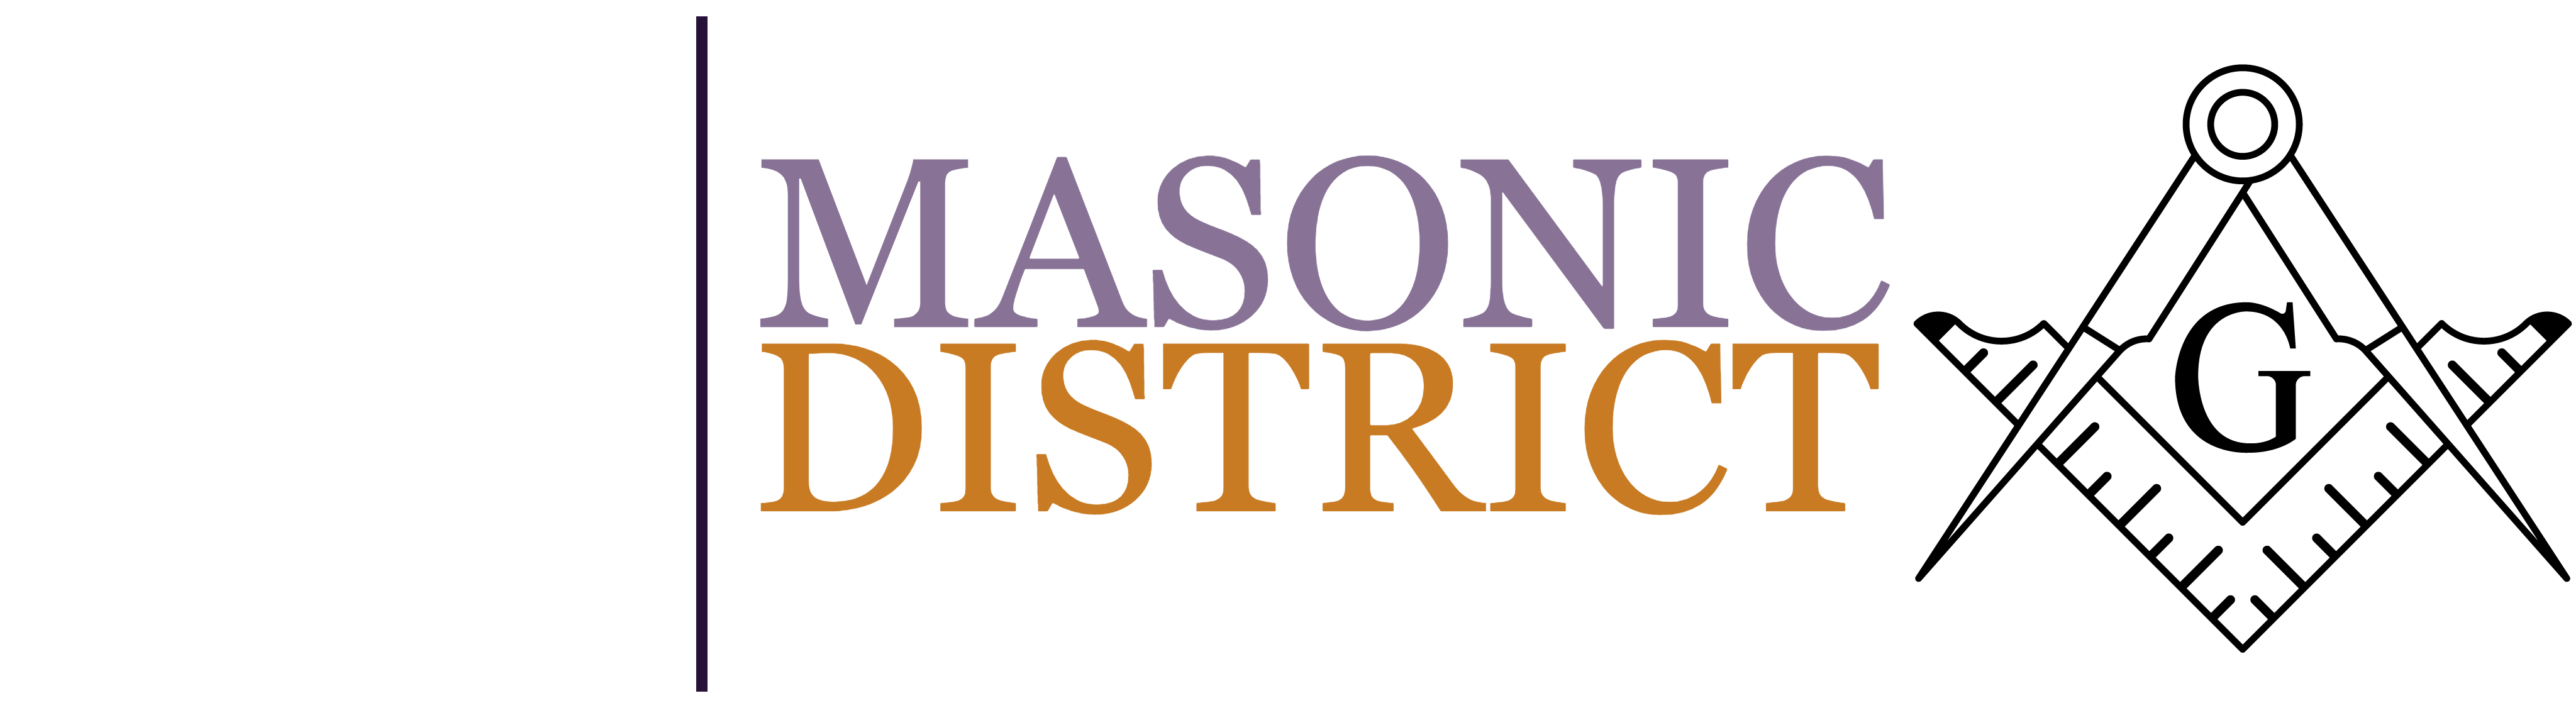 25th Masonic District of Massachusetts Freemasonry